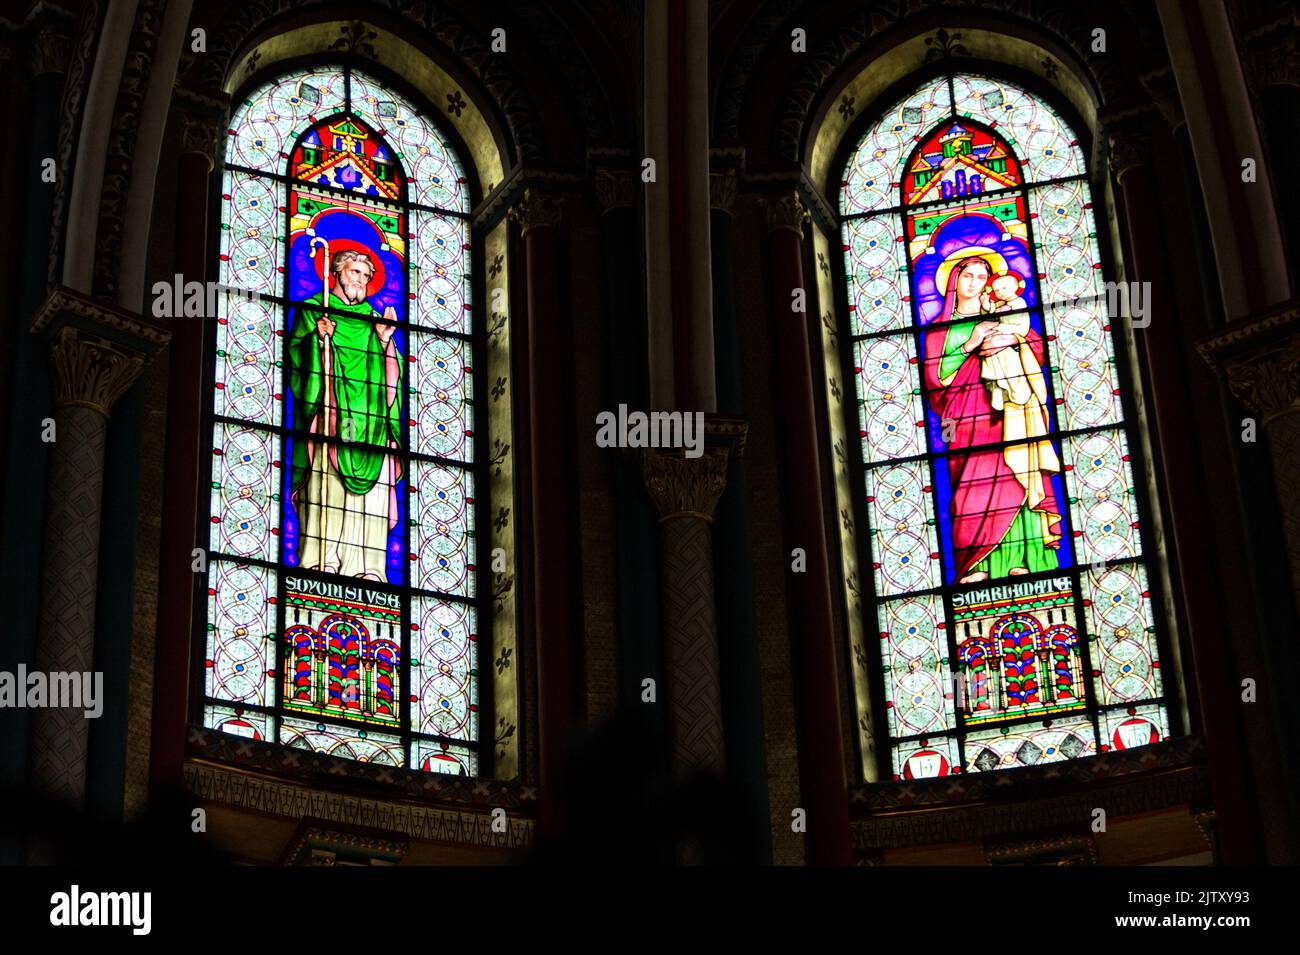 Saint Mary with Child and Saint Denis - Stained glass windows of Abbaye de Saint-Germain-des-Prés - Paris Stock Photo